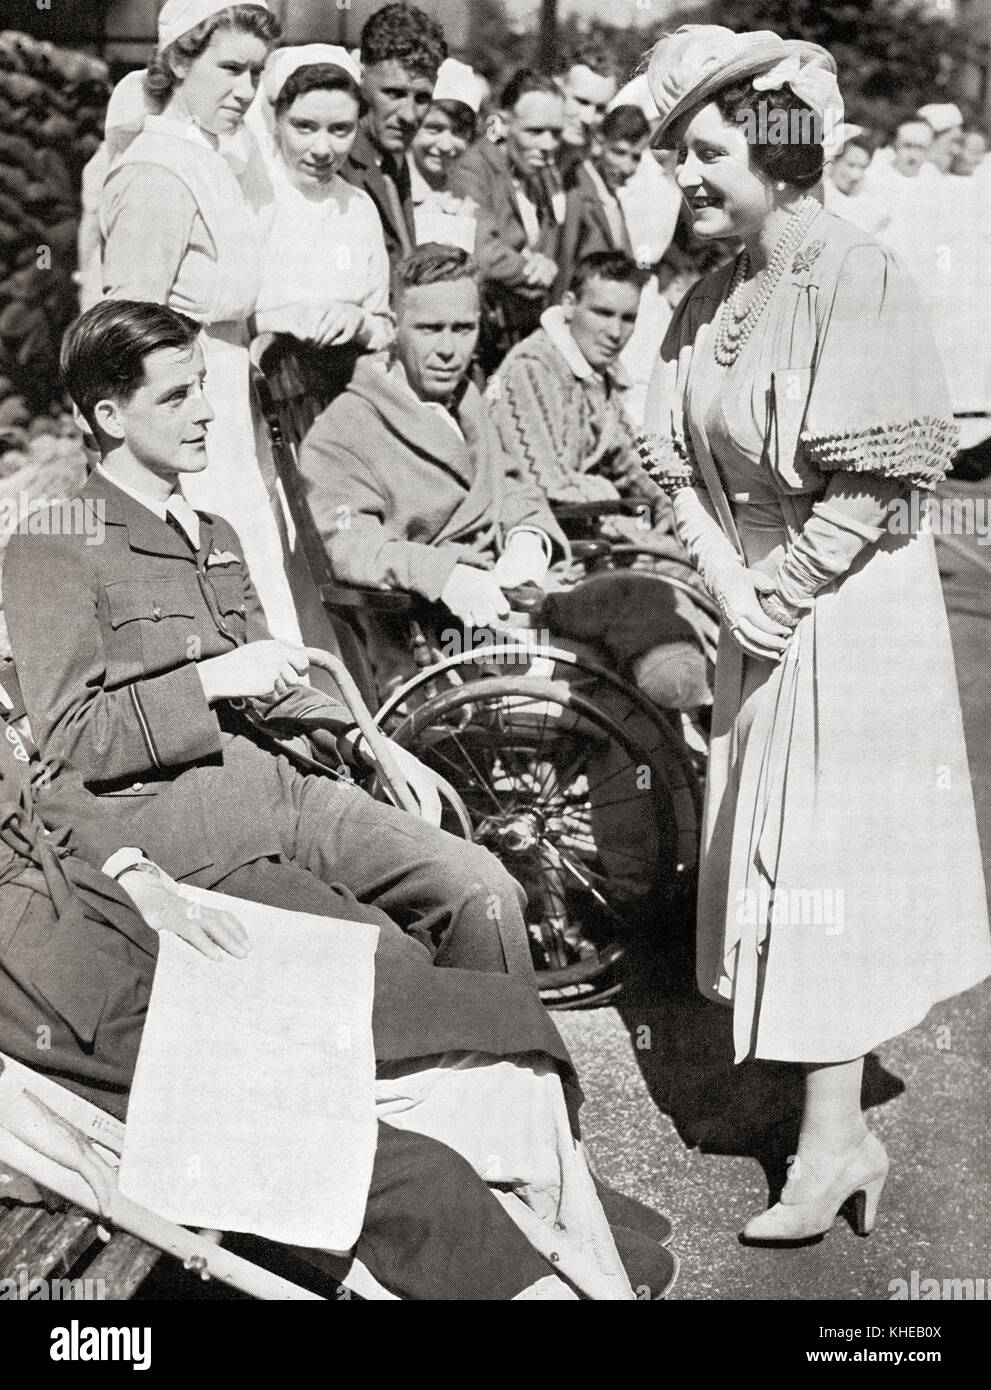 Queen Elizabeth besuchen die Überlebenden von Dünkirchen. Königin Elizabeth, die Königinmutter. Elizabeth Angela Marguerite Bowes-Lyon, 1900 - 2002. Frau von König George VI. und Mutter von Königin Elizabeth II. Stockfoto